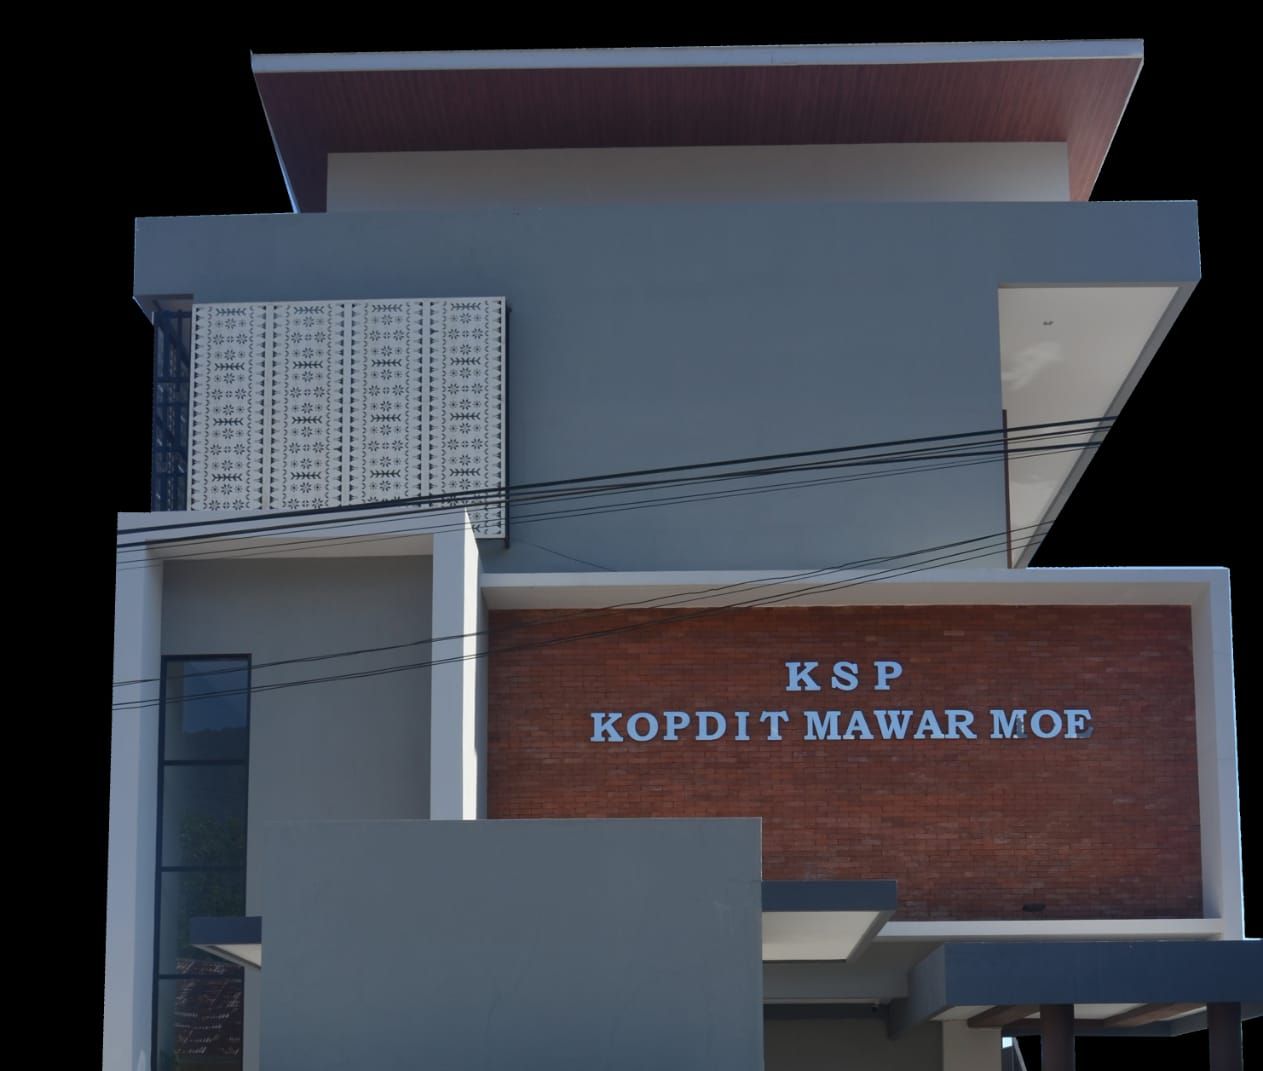 Gedung KSP Kopdit Mawar Moe di Ruteng, Manggarai NTT